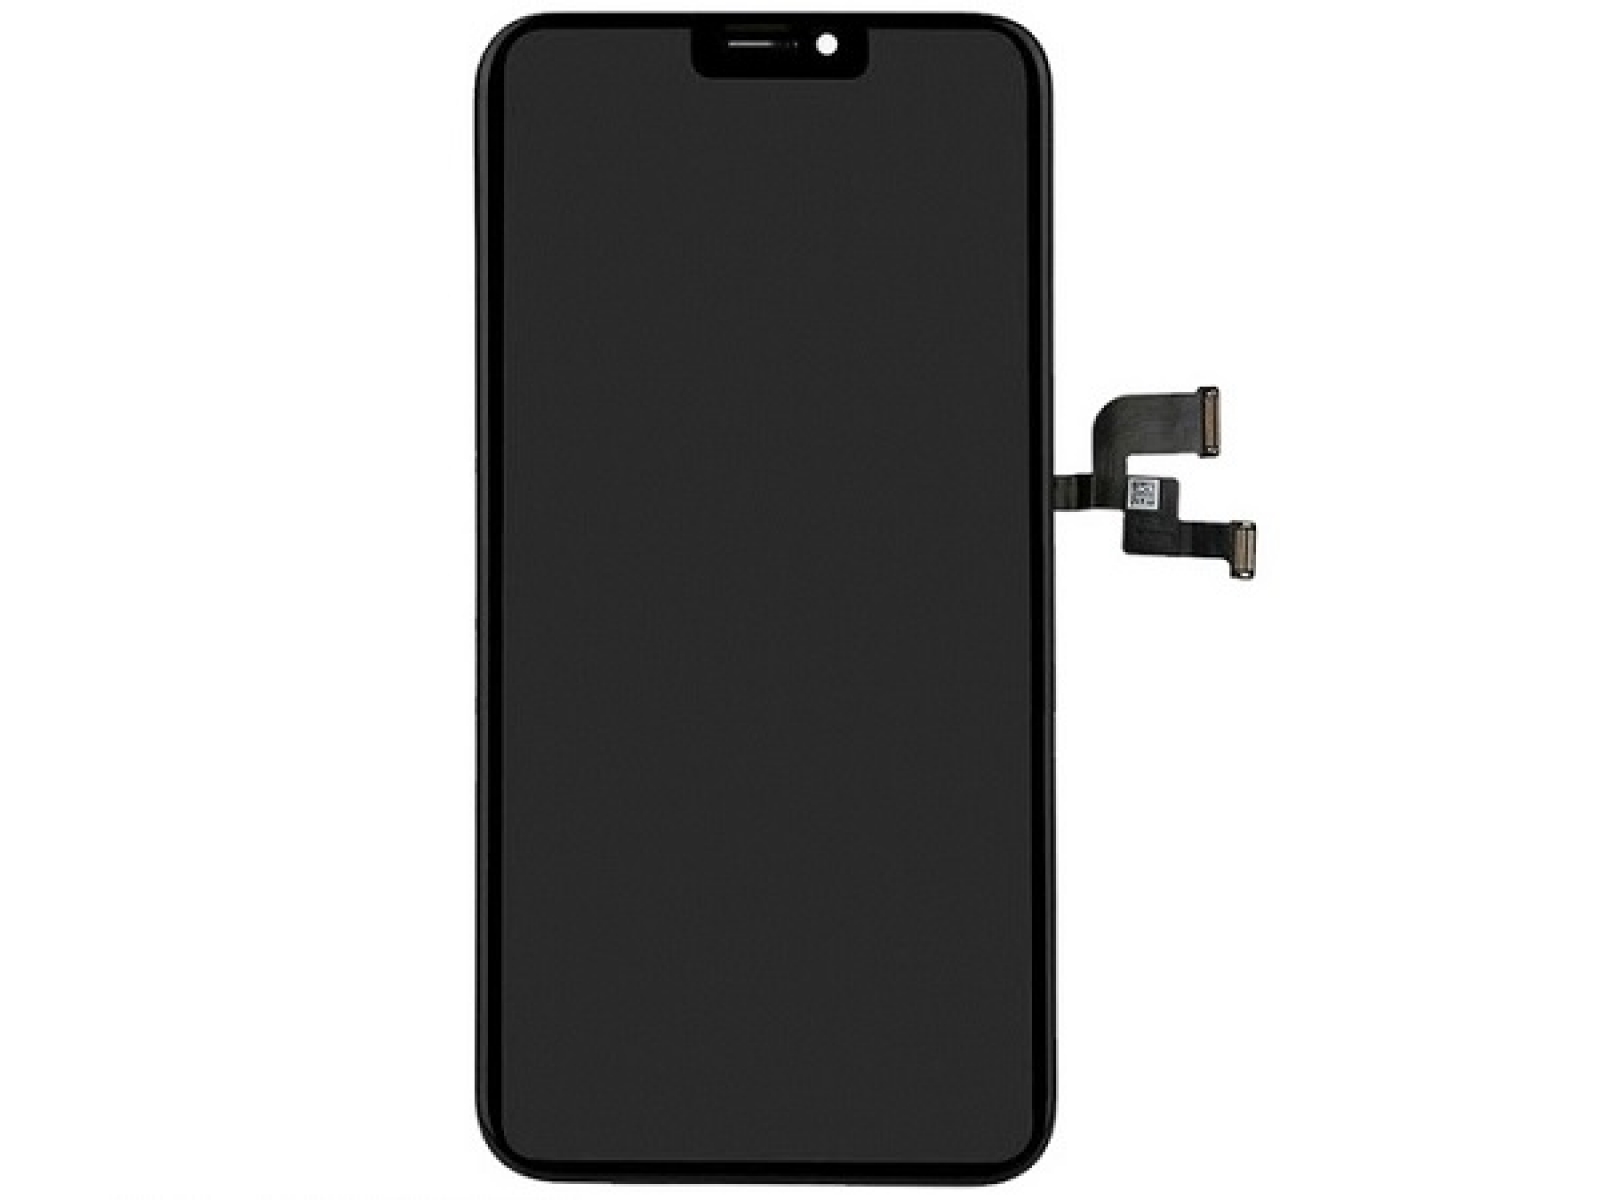 In Ốp Lưng Điện Thoại iPhone X Theo Yêu Cầu Đẳng Cấp - HATO Case